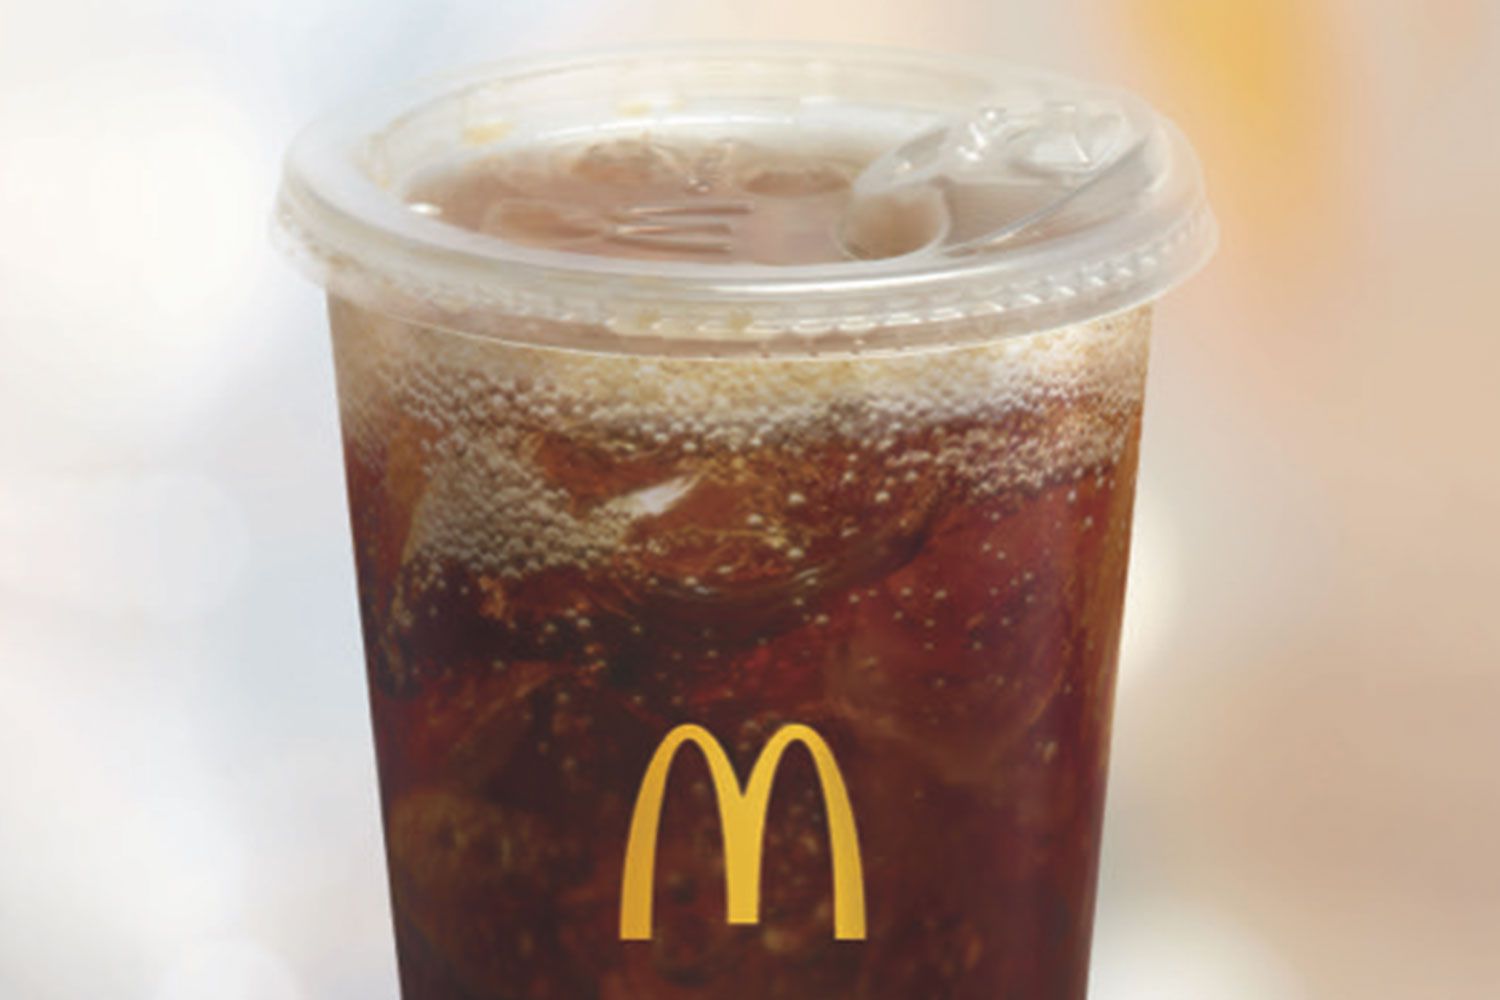 McDonald's กำลังทดสอบฝาไร้หลอดซึ่งเป็นส่วนหนึ่งของ 'ความมุ่งมั่นระดับโลกอย่างต่อเนื่องในการลดปริมาณขยะ'